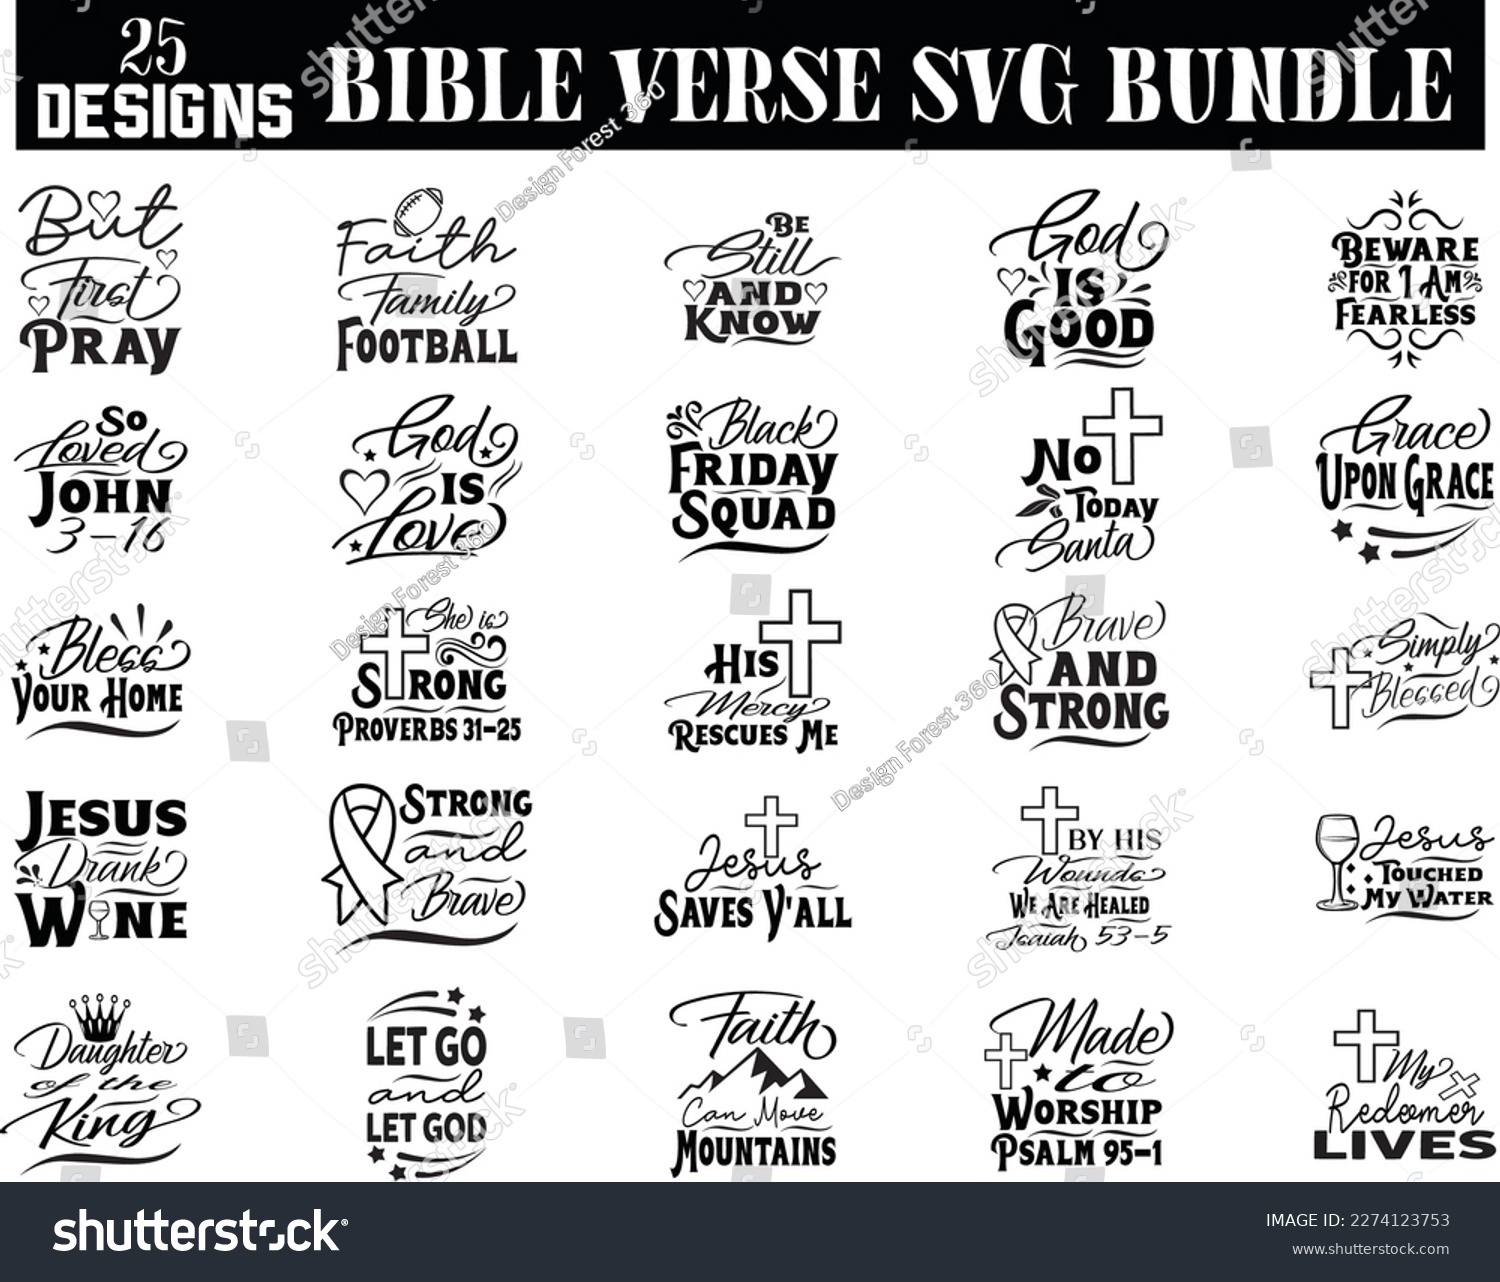 SVG of Bible Verse SVG bundle, Bible Verse SVG design svg